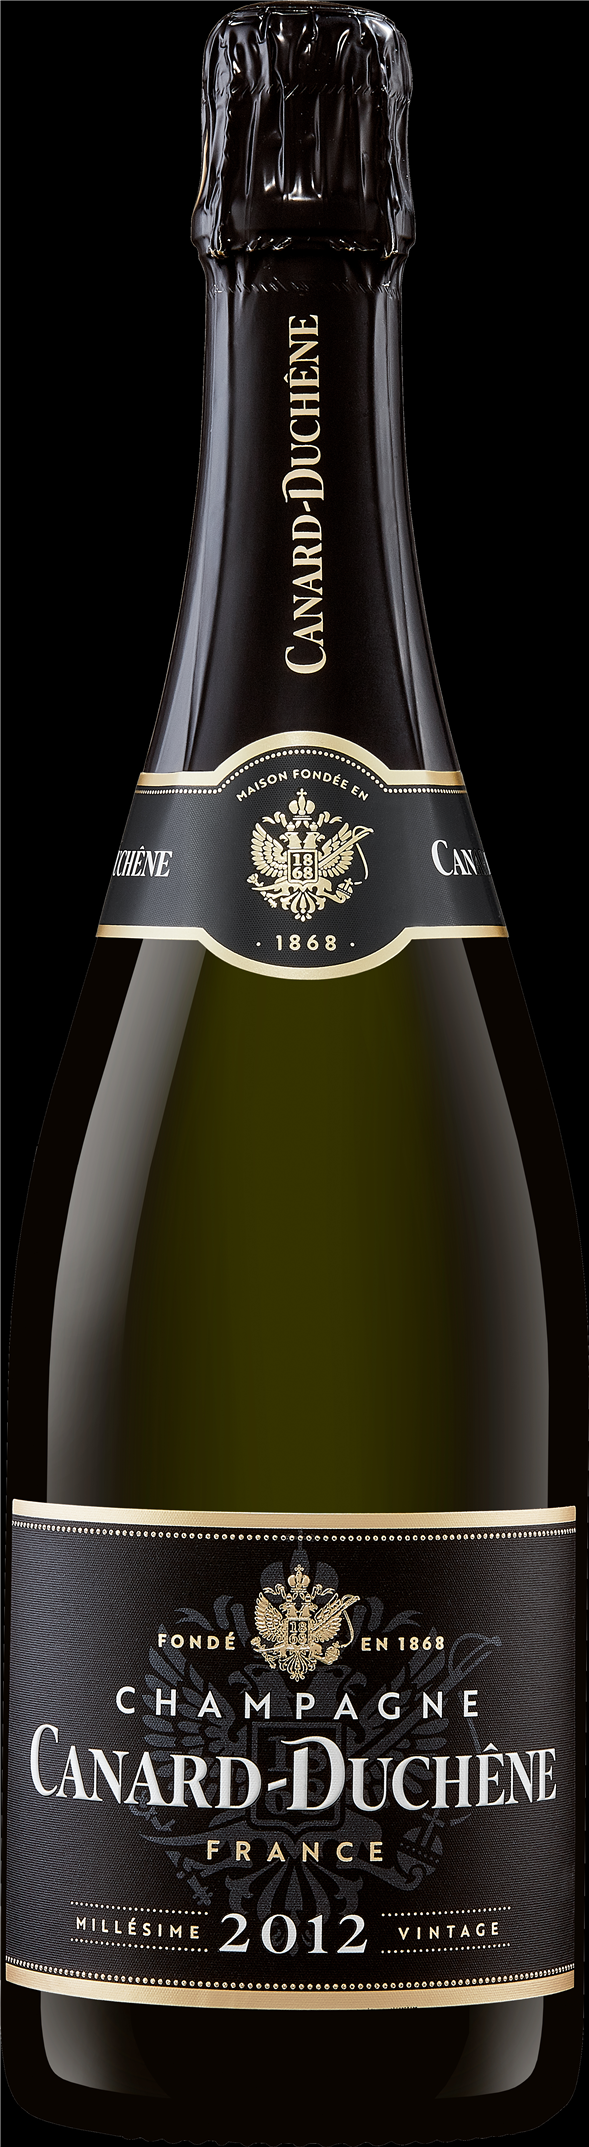 Canard-Duchene Vintage 2014, Champagne Frankrig